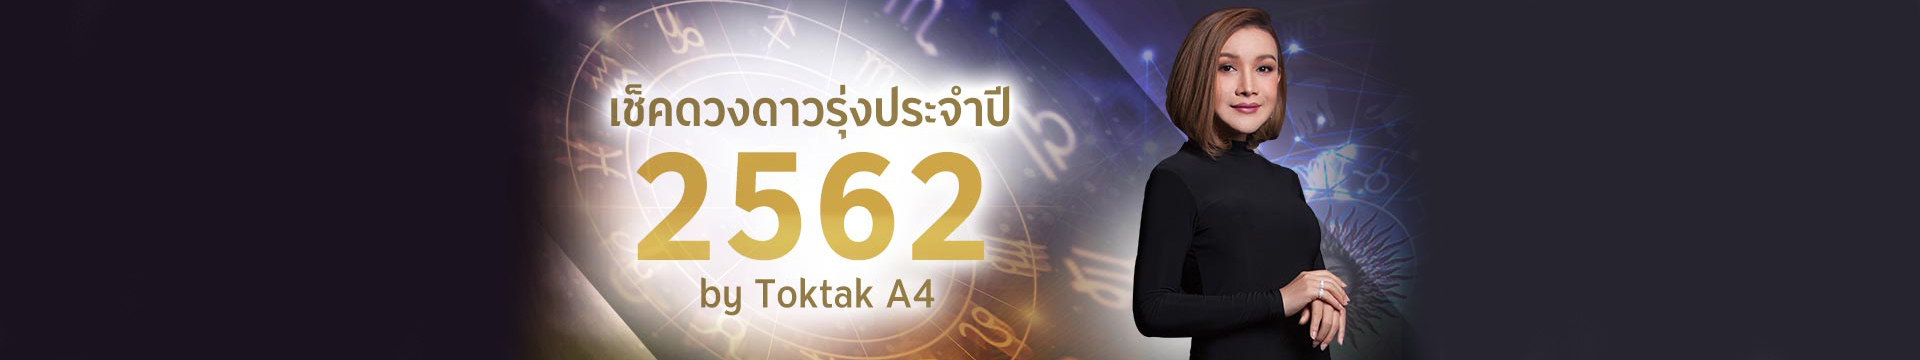 เช็คดวงปี 2562 ตามวันเกิด โดย Toktak A4